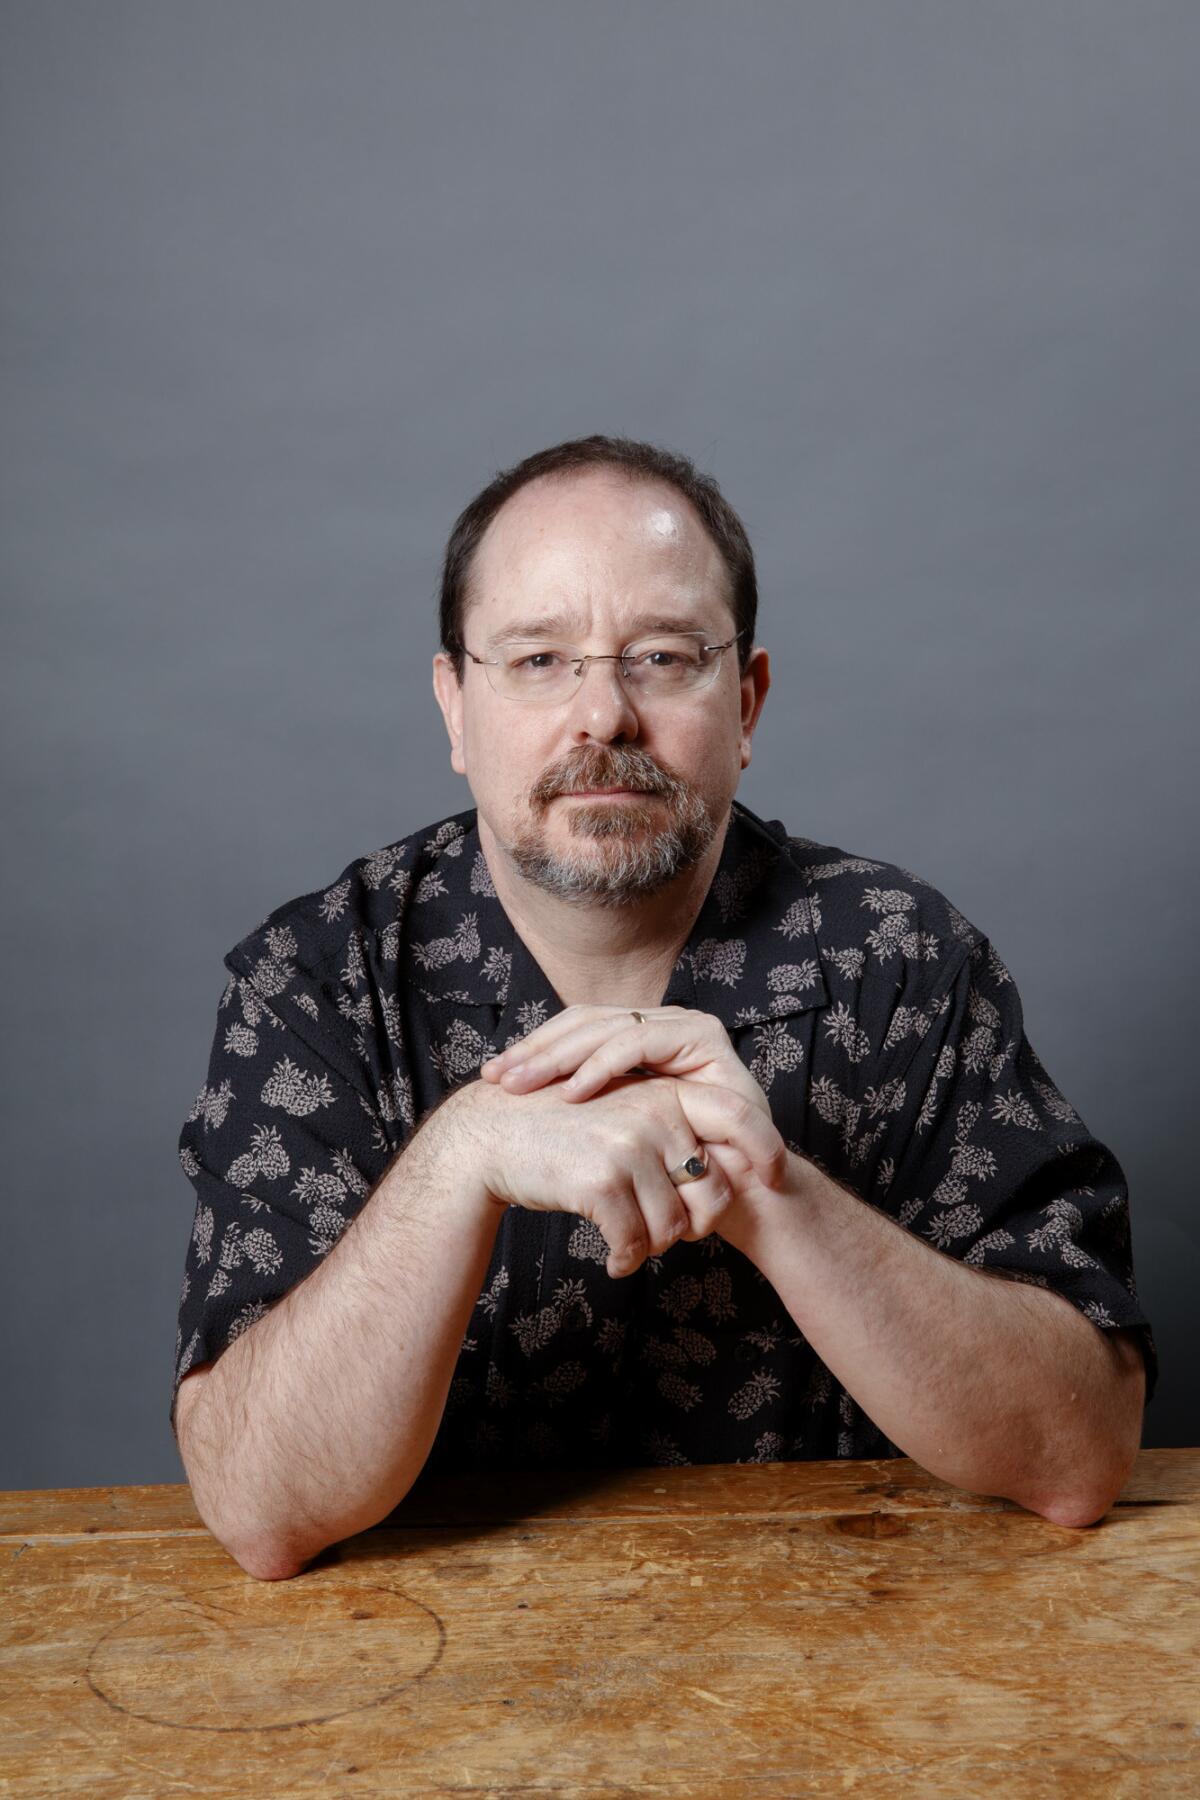 Author John Scalzi